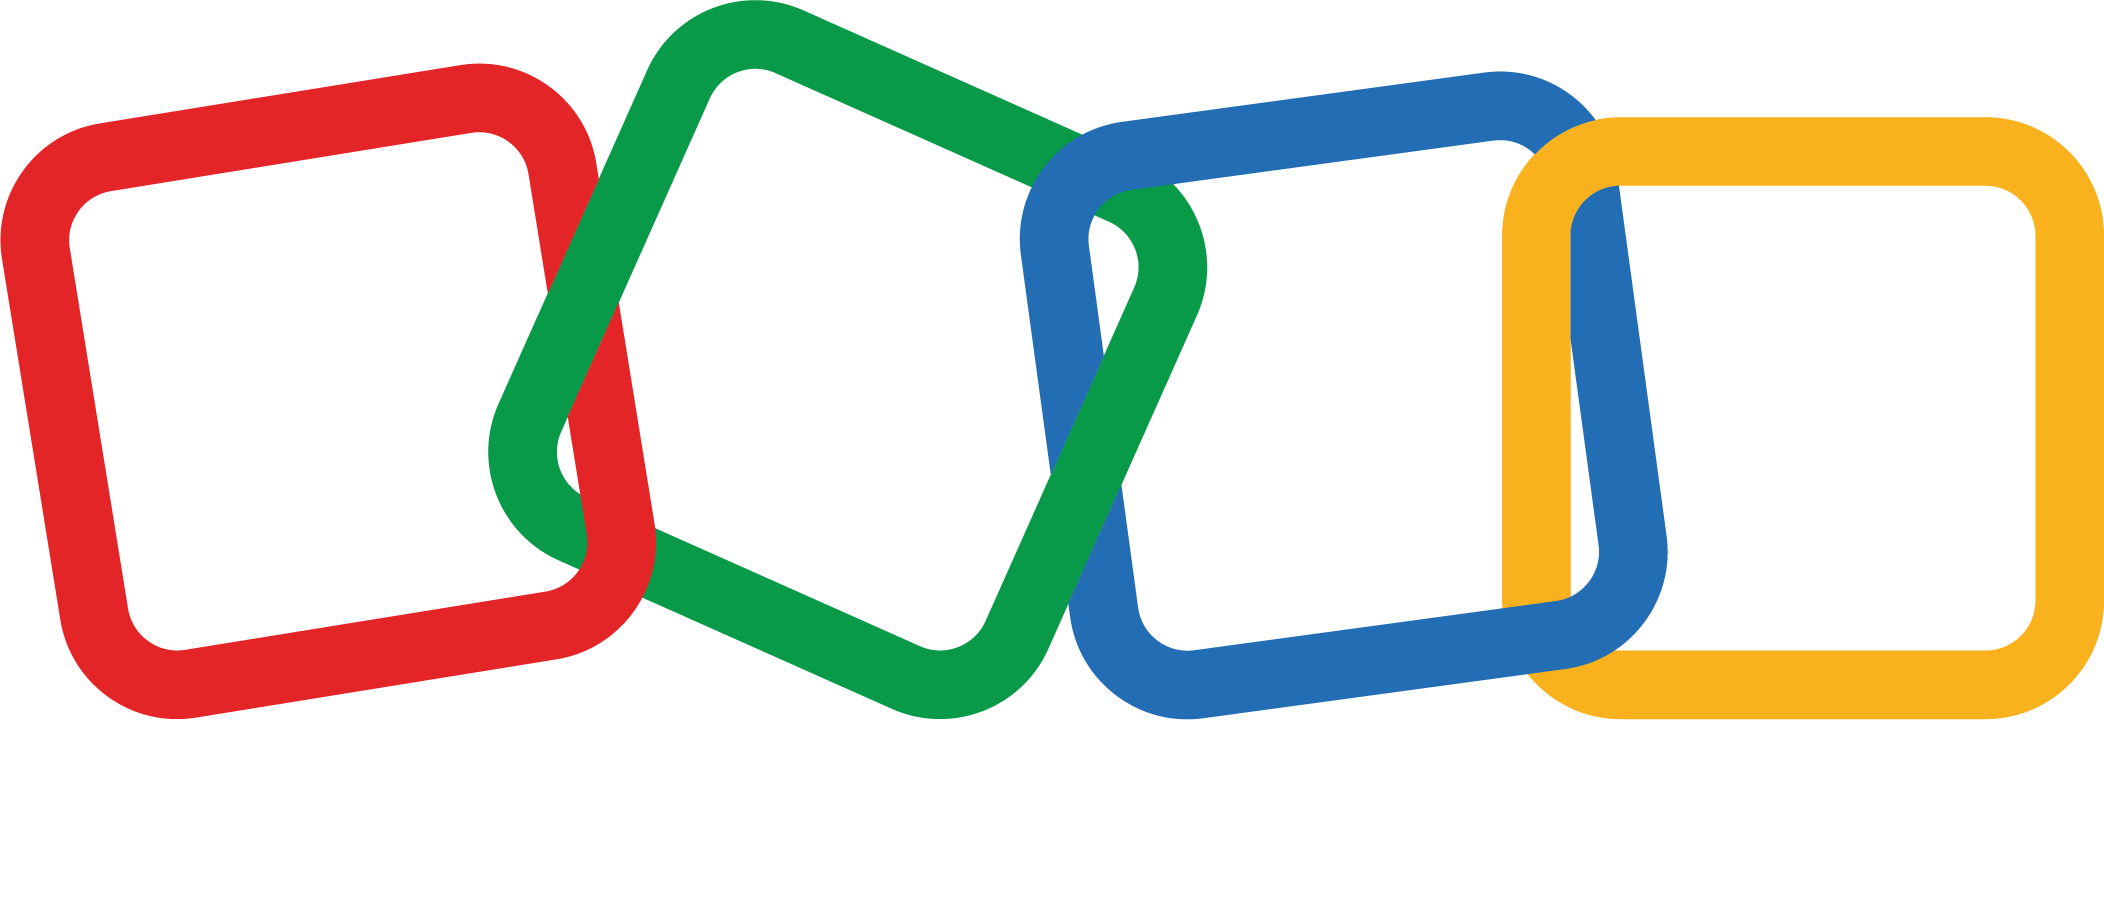 zoho-logo-darkbg